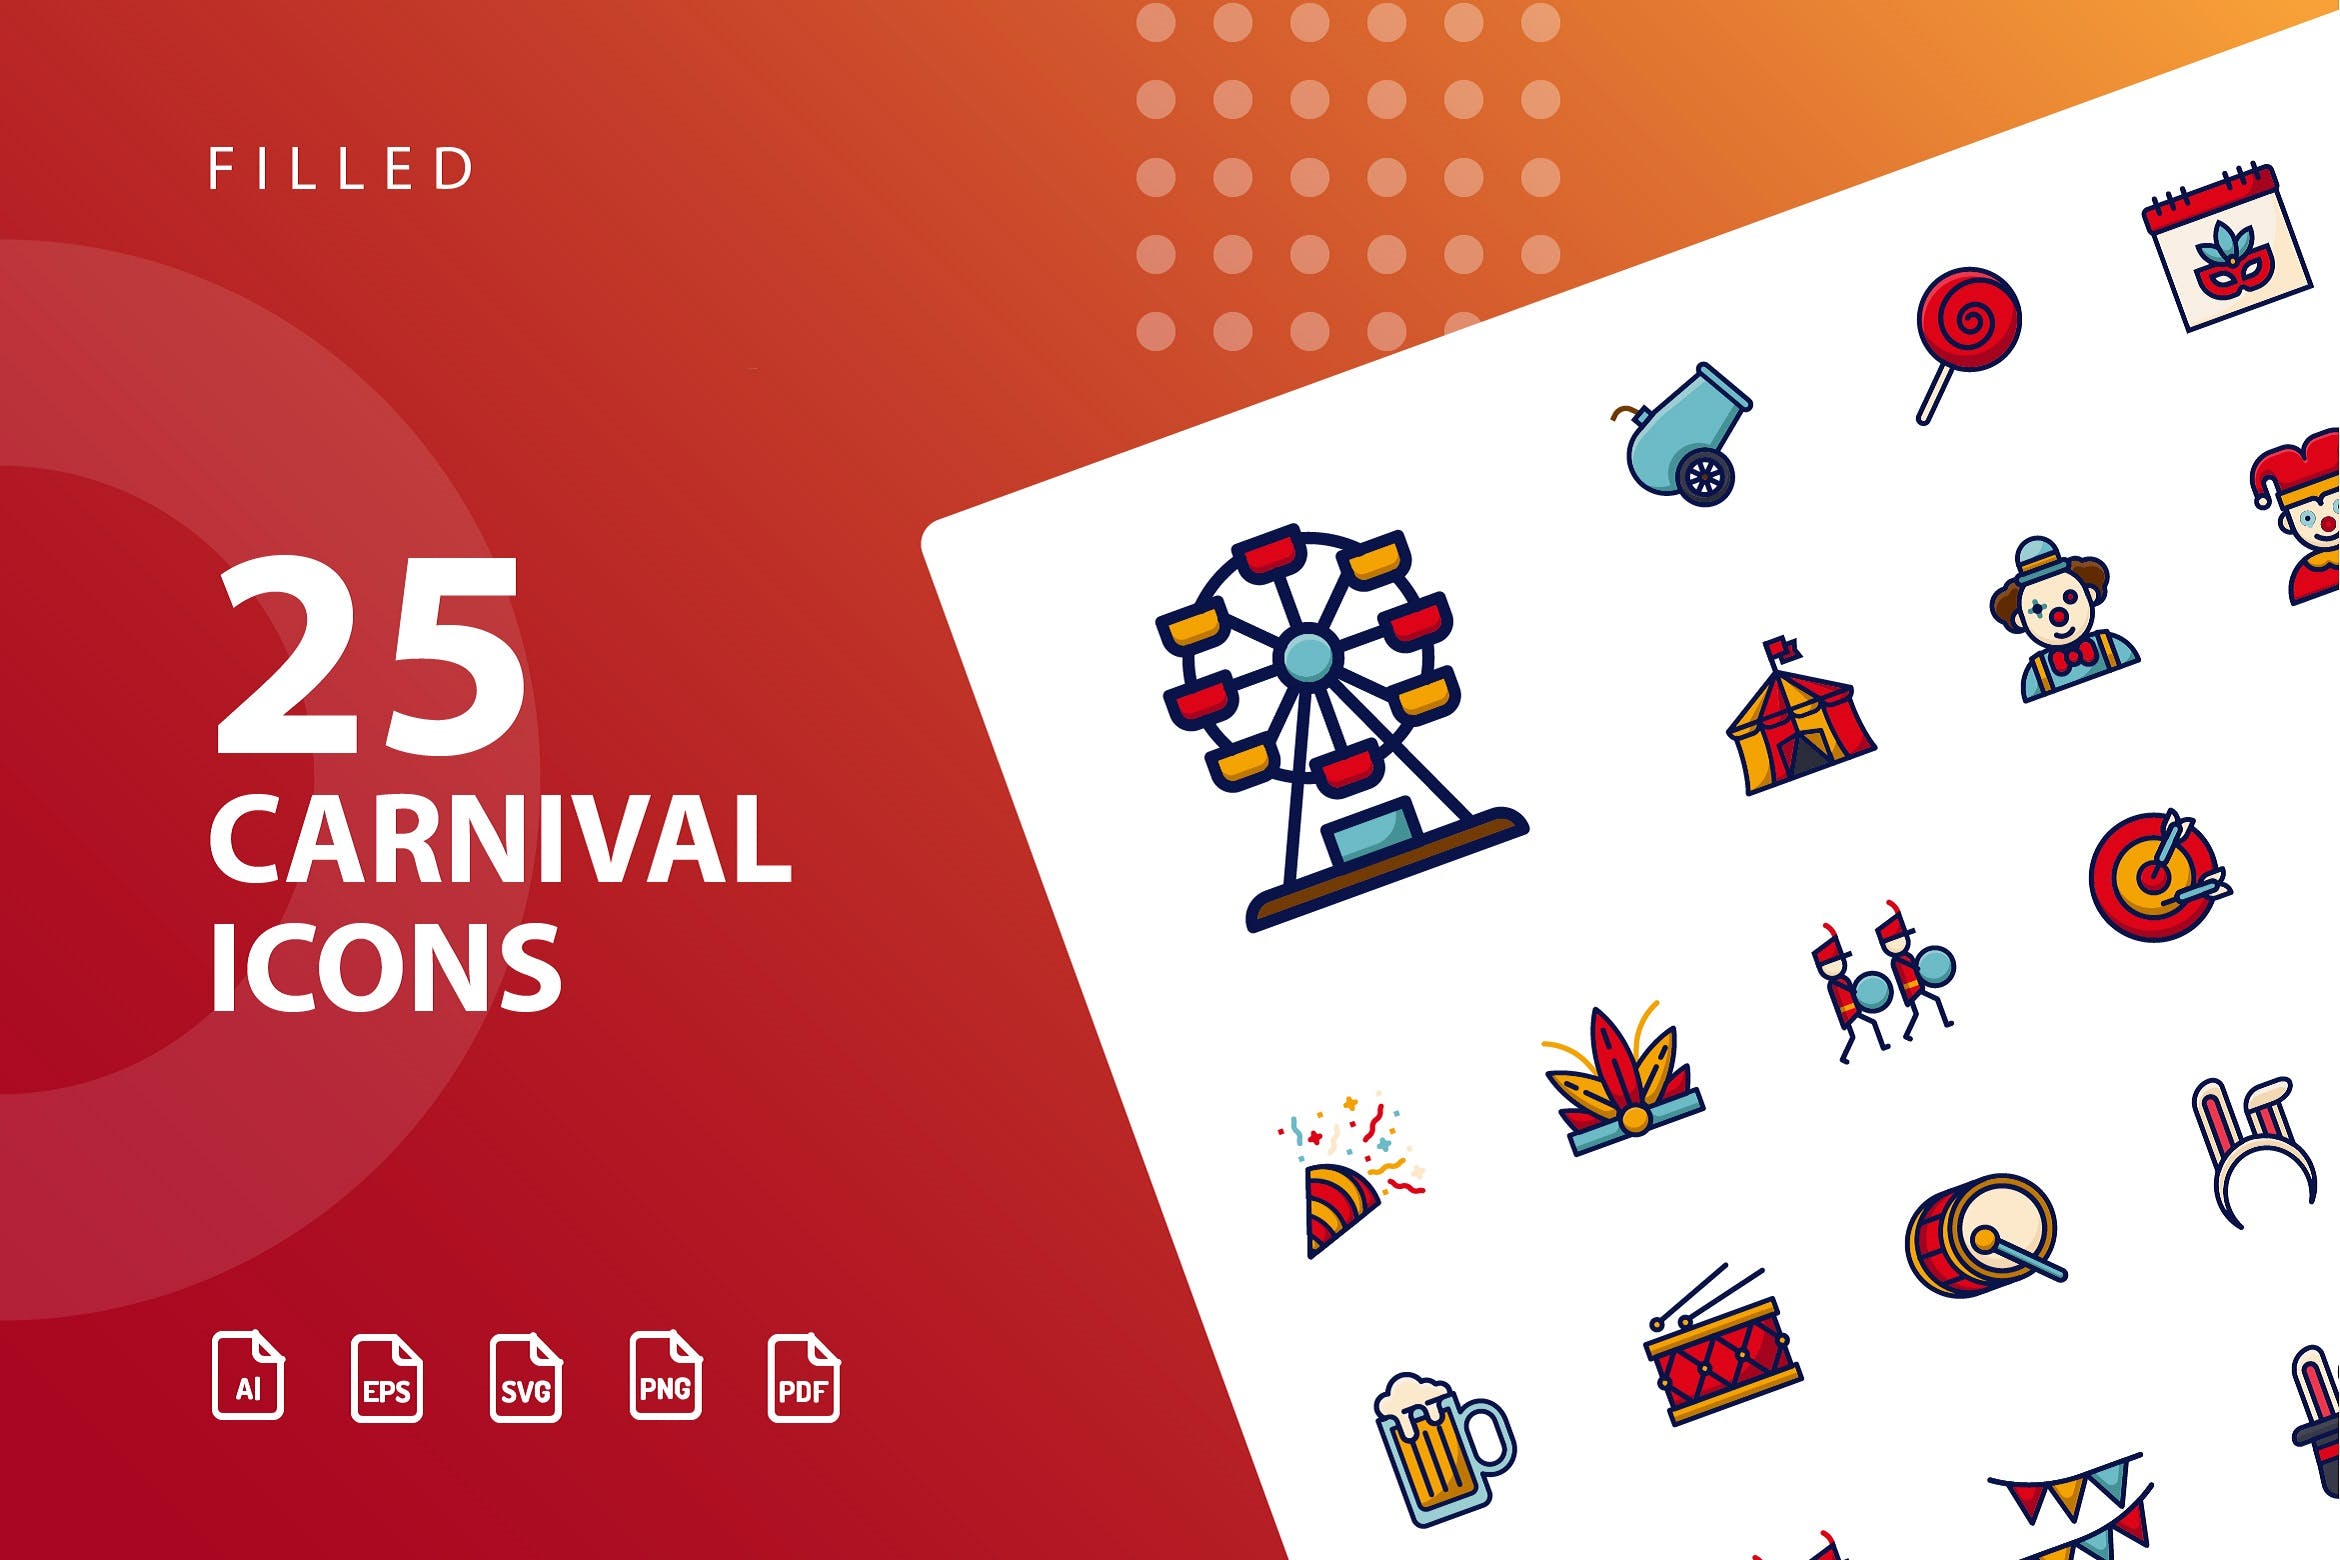 25枚狂欢节主题填充图标素材 Carnival Filled插图